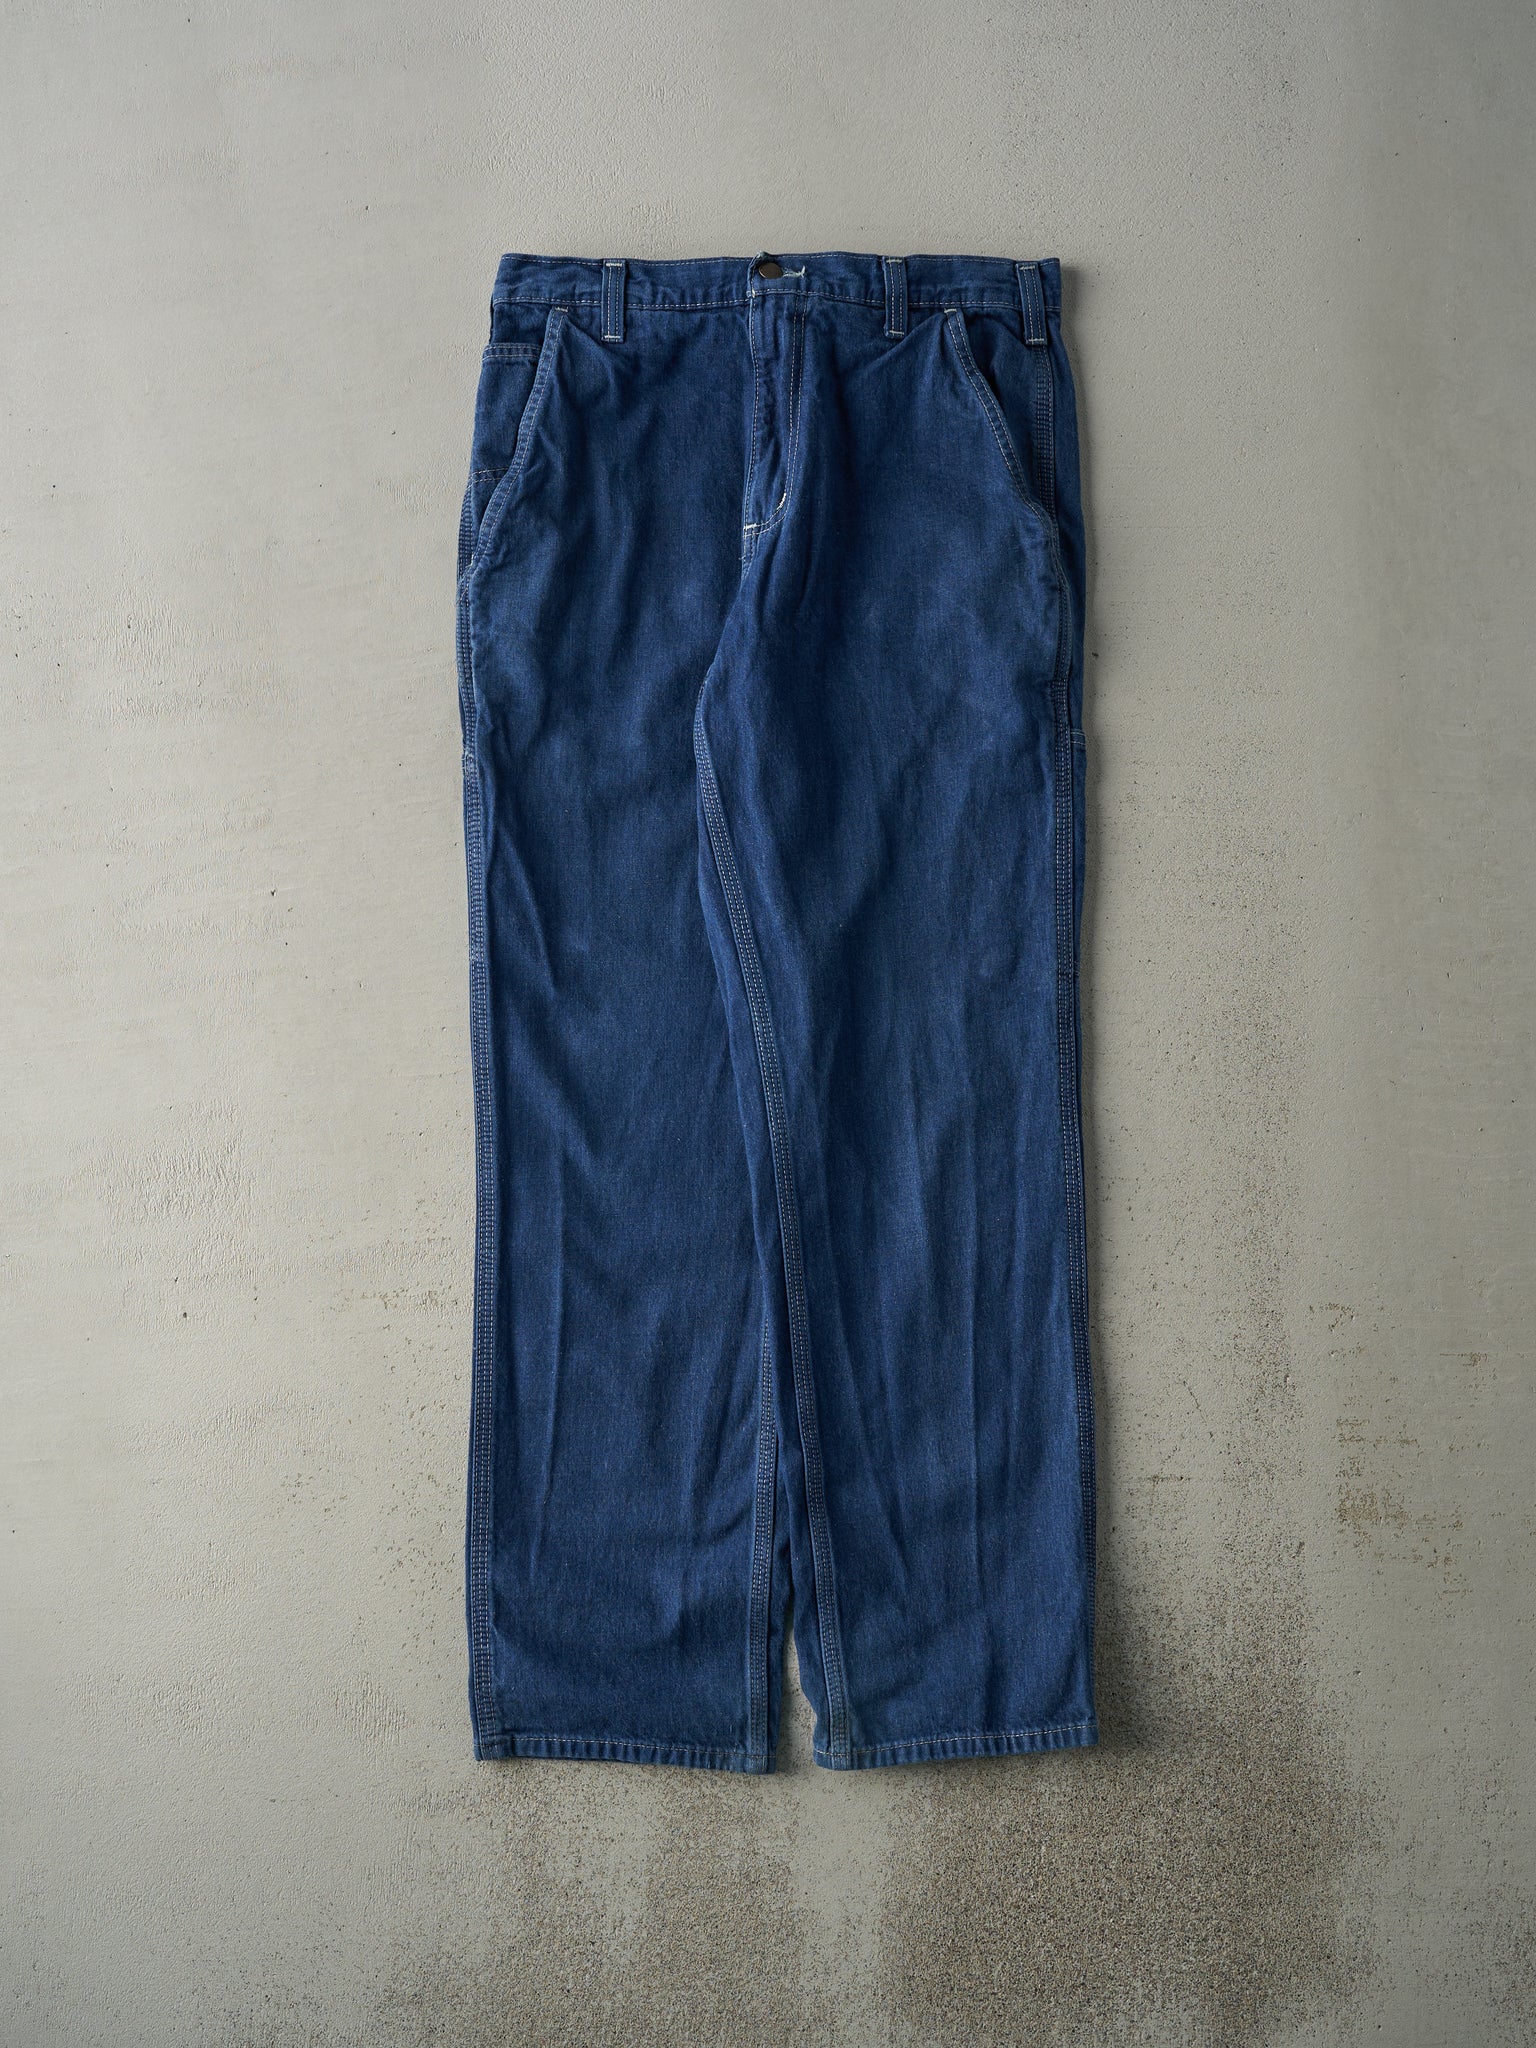 Vintage Y2K Dark Wash Carhartt Workwear Jeans (33x32.5)